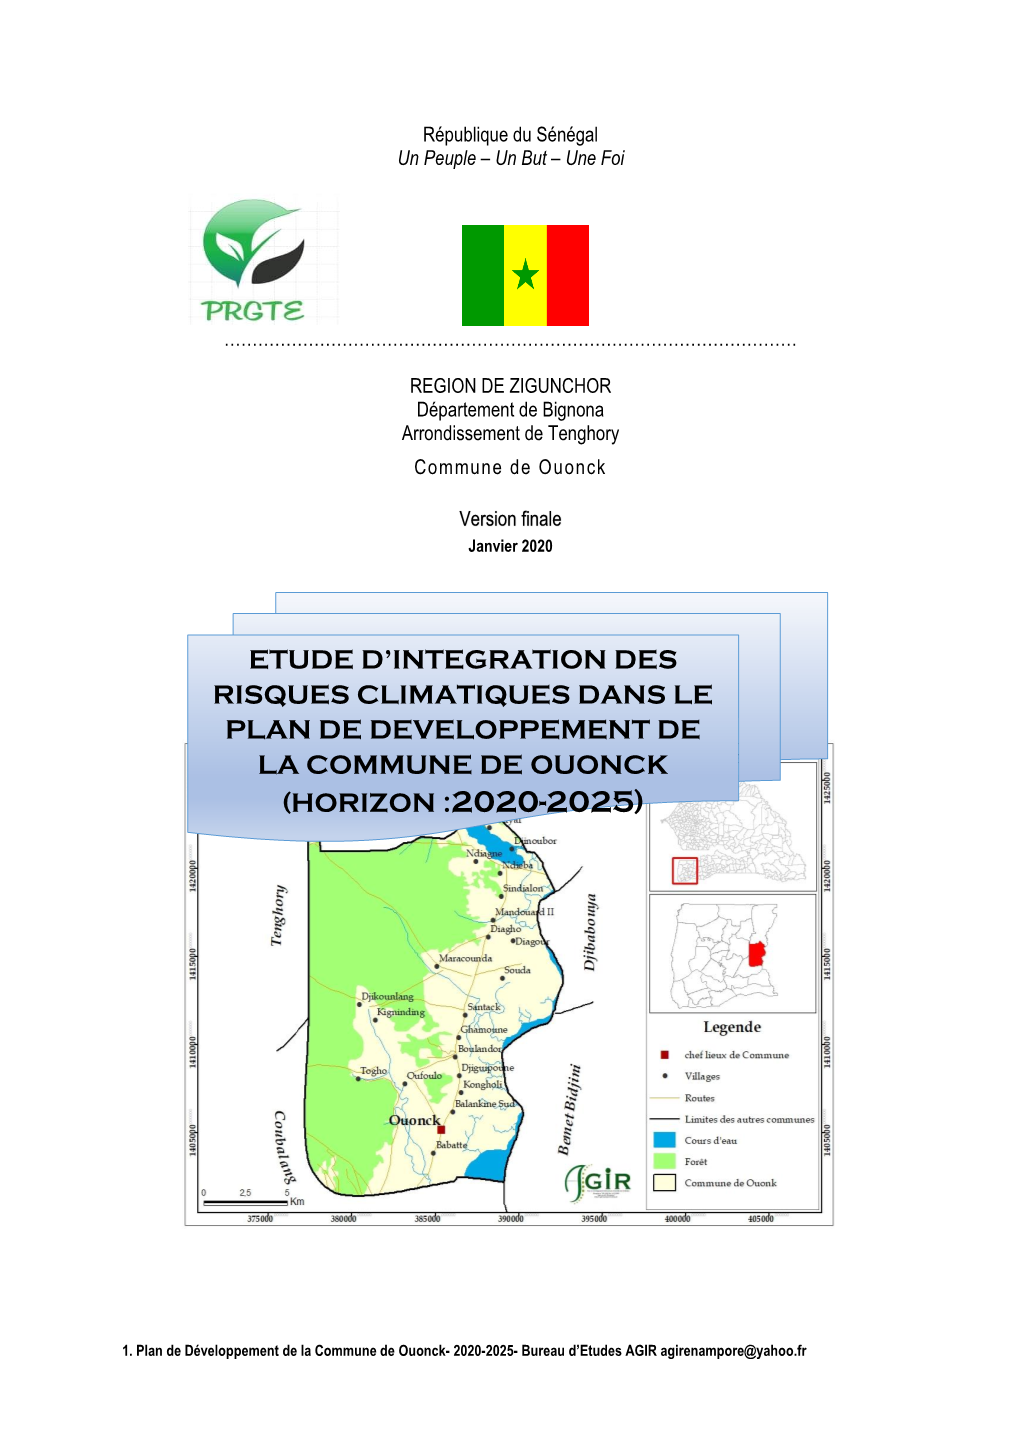 Etude D'integration Des Risques Climatiques Dans Le Plan De Developpement De La Commune De Ouonck (Horizon :2020-2025)